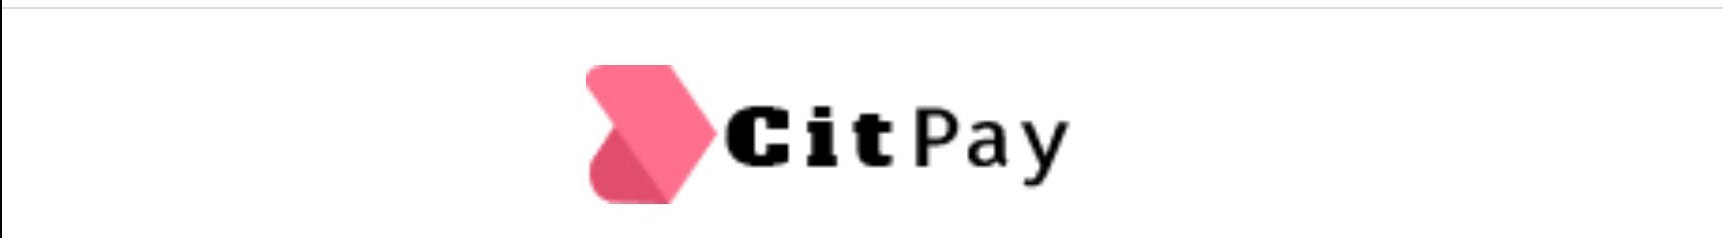 Citpay CO's profile banner